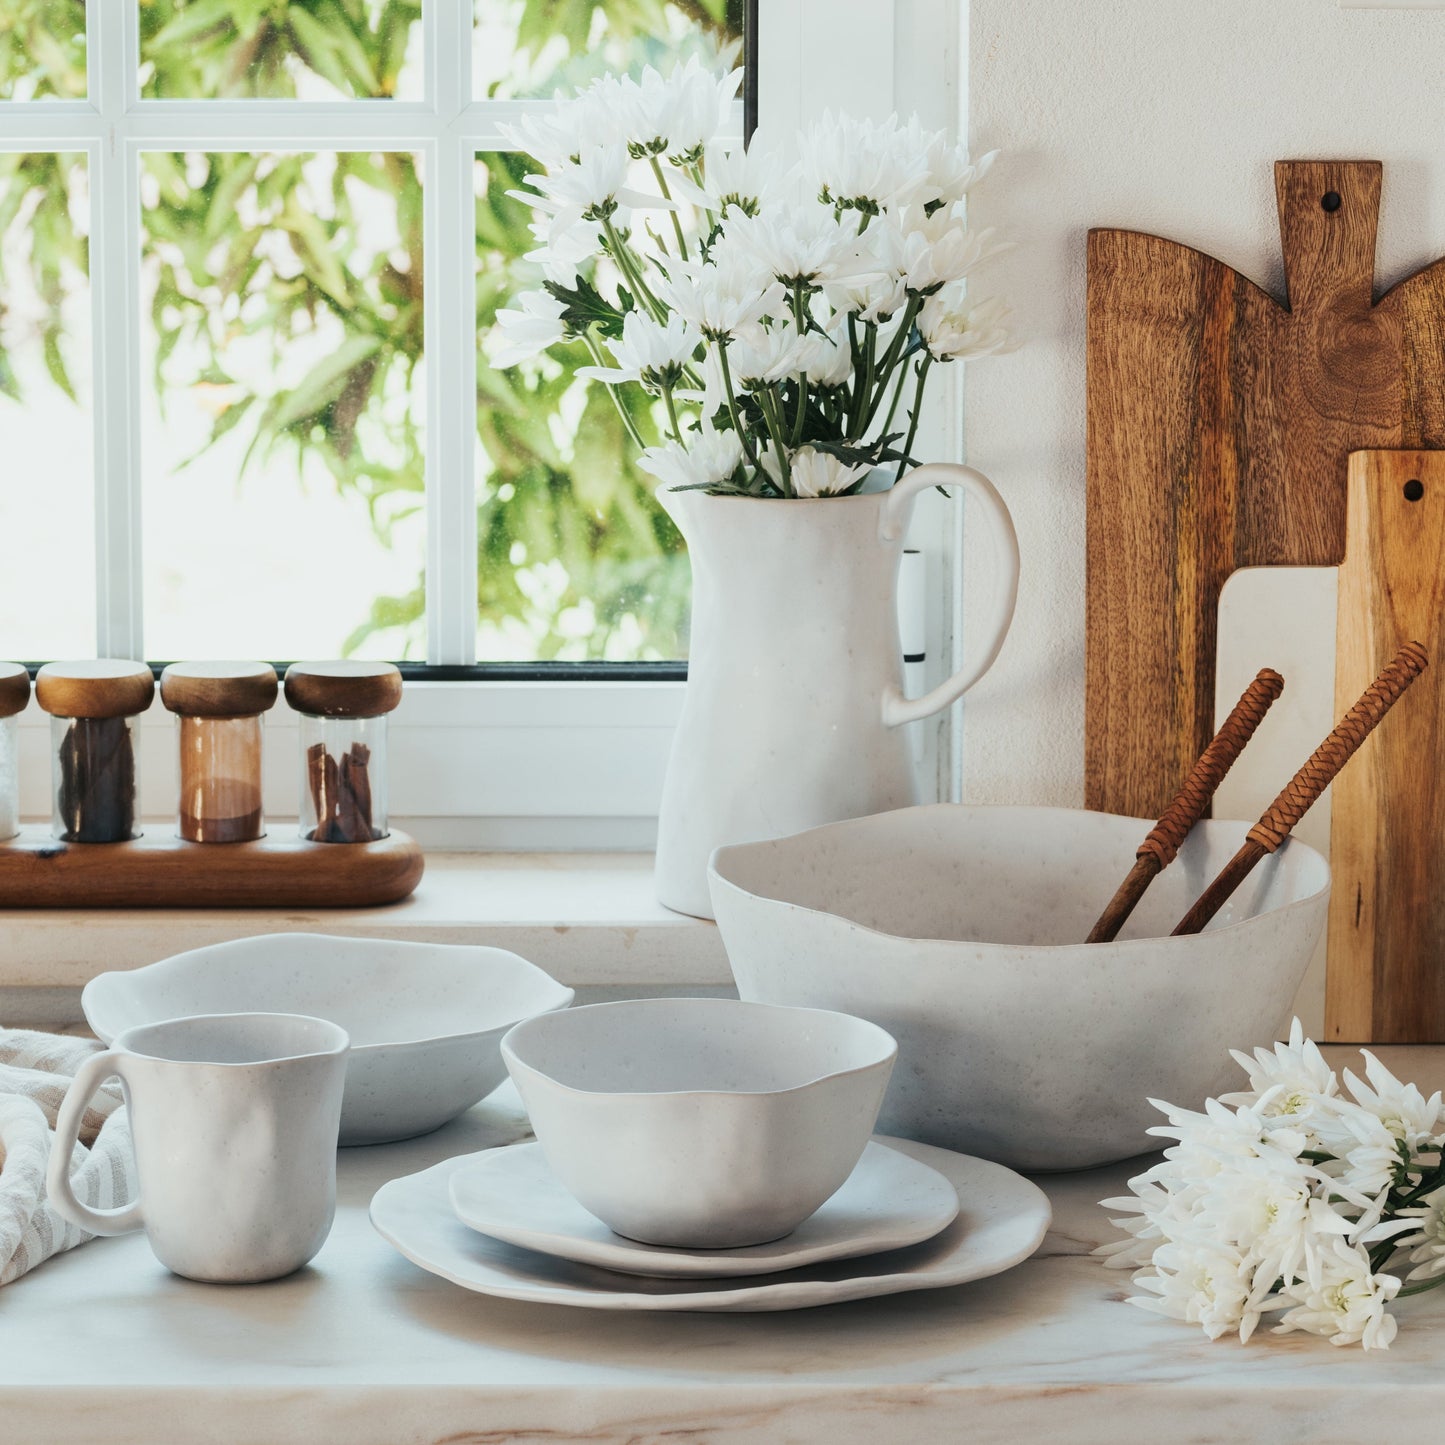 White Ceramic Bowl | White Serving Bowl | Egg back home